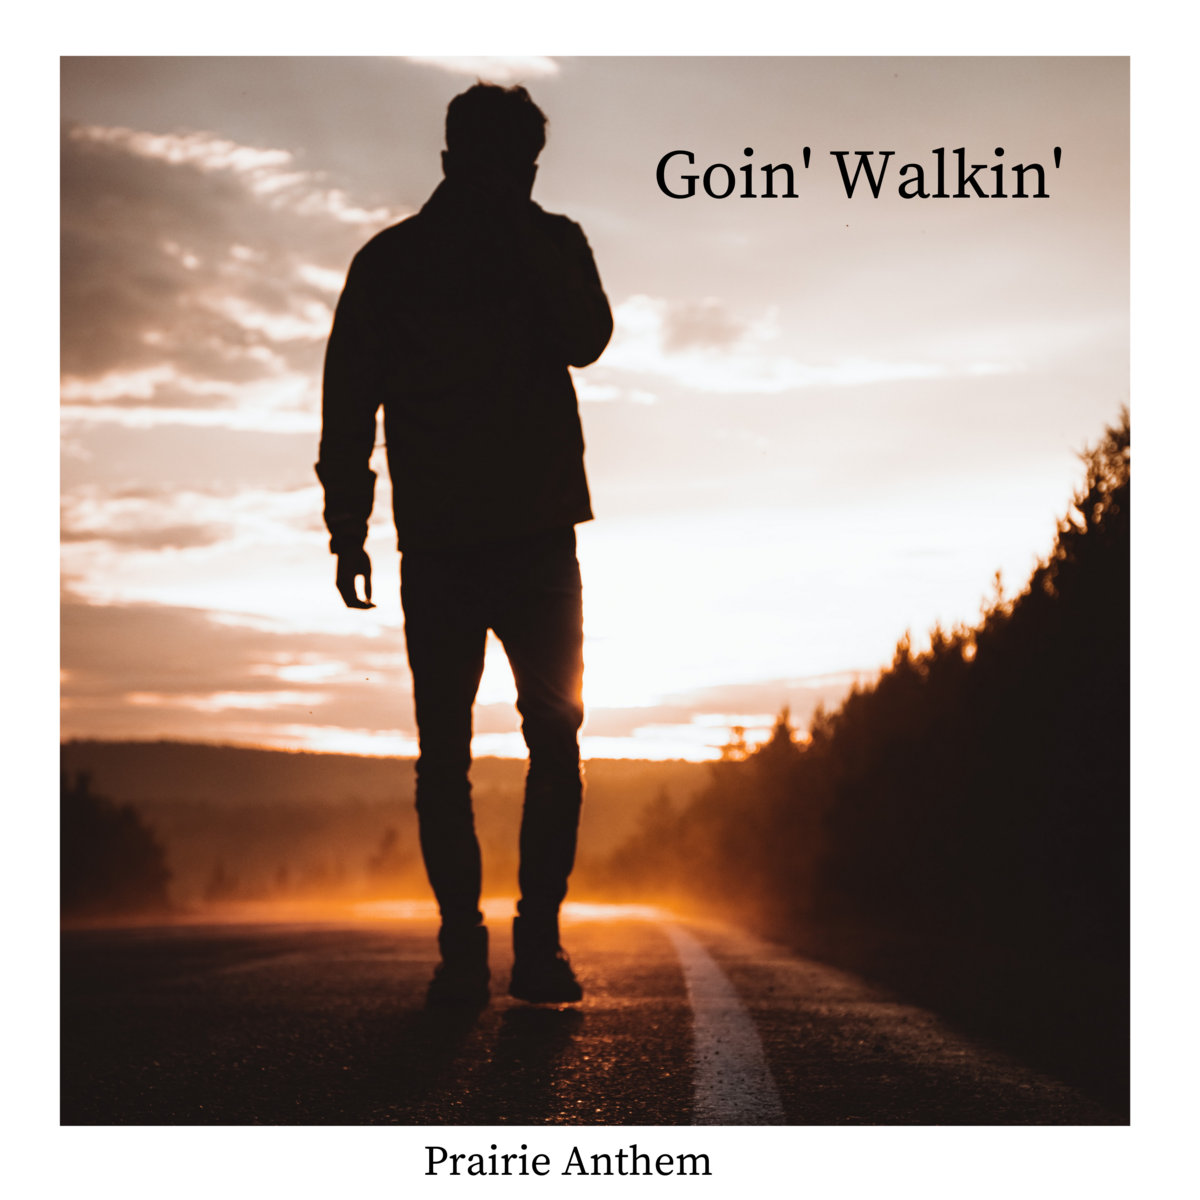 Goin' Walkin' by Prairie Anthem